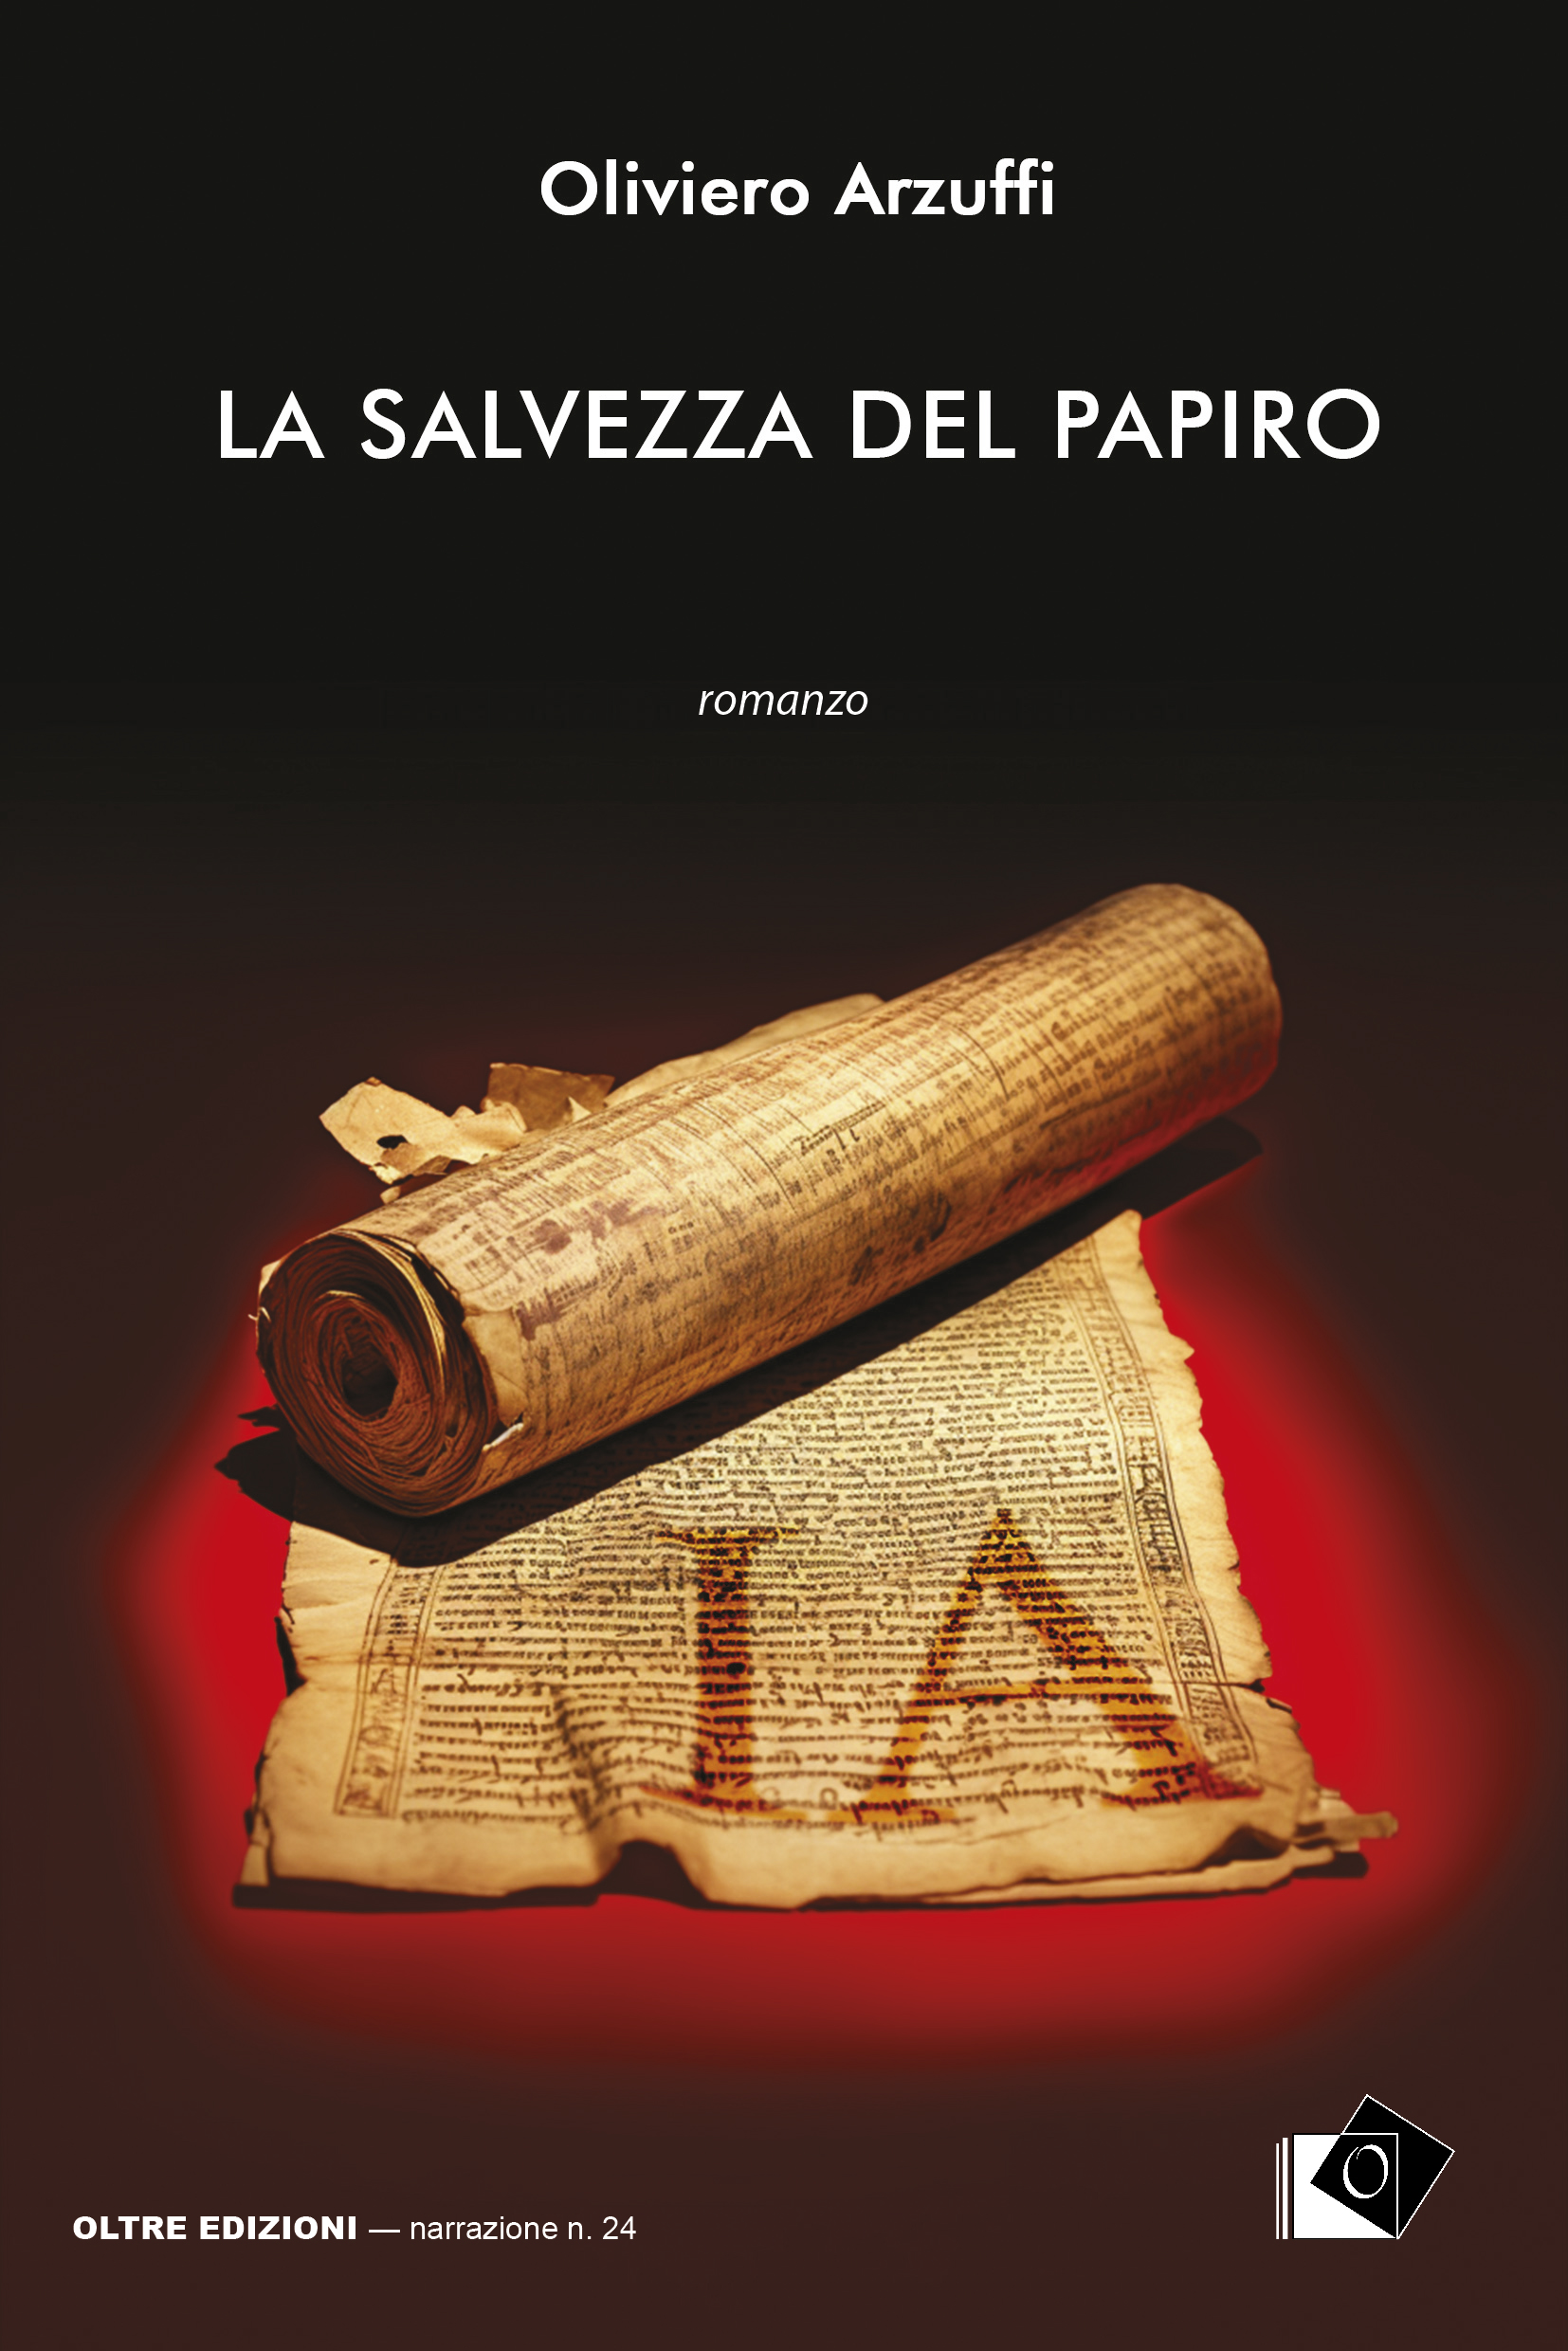 La salvezza del papiro, romanzo di Oliviero Arzuffi, pagine 178, formato cm. 15 x 22,5, € 16,00